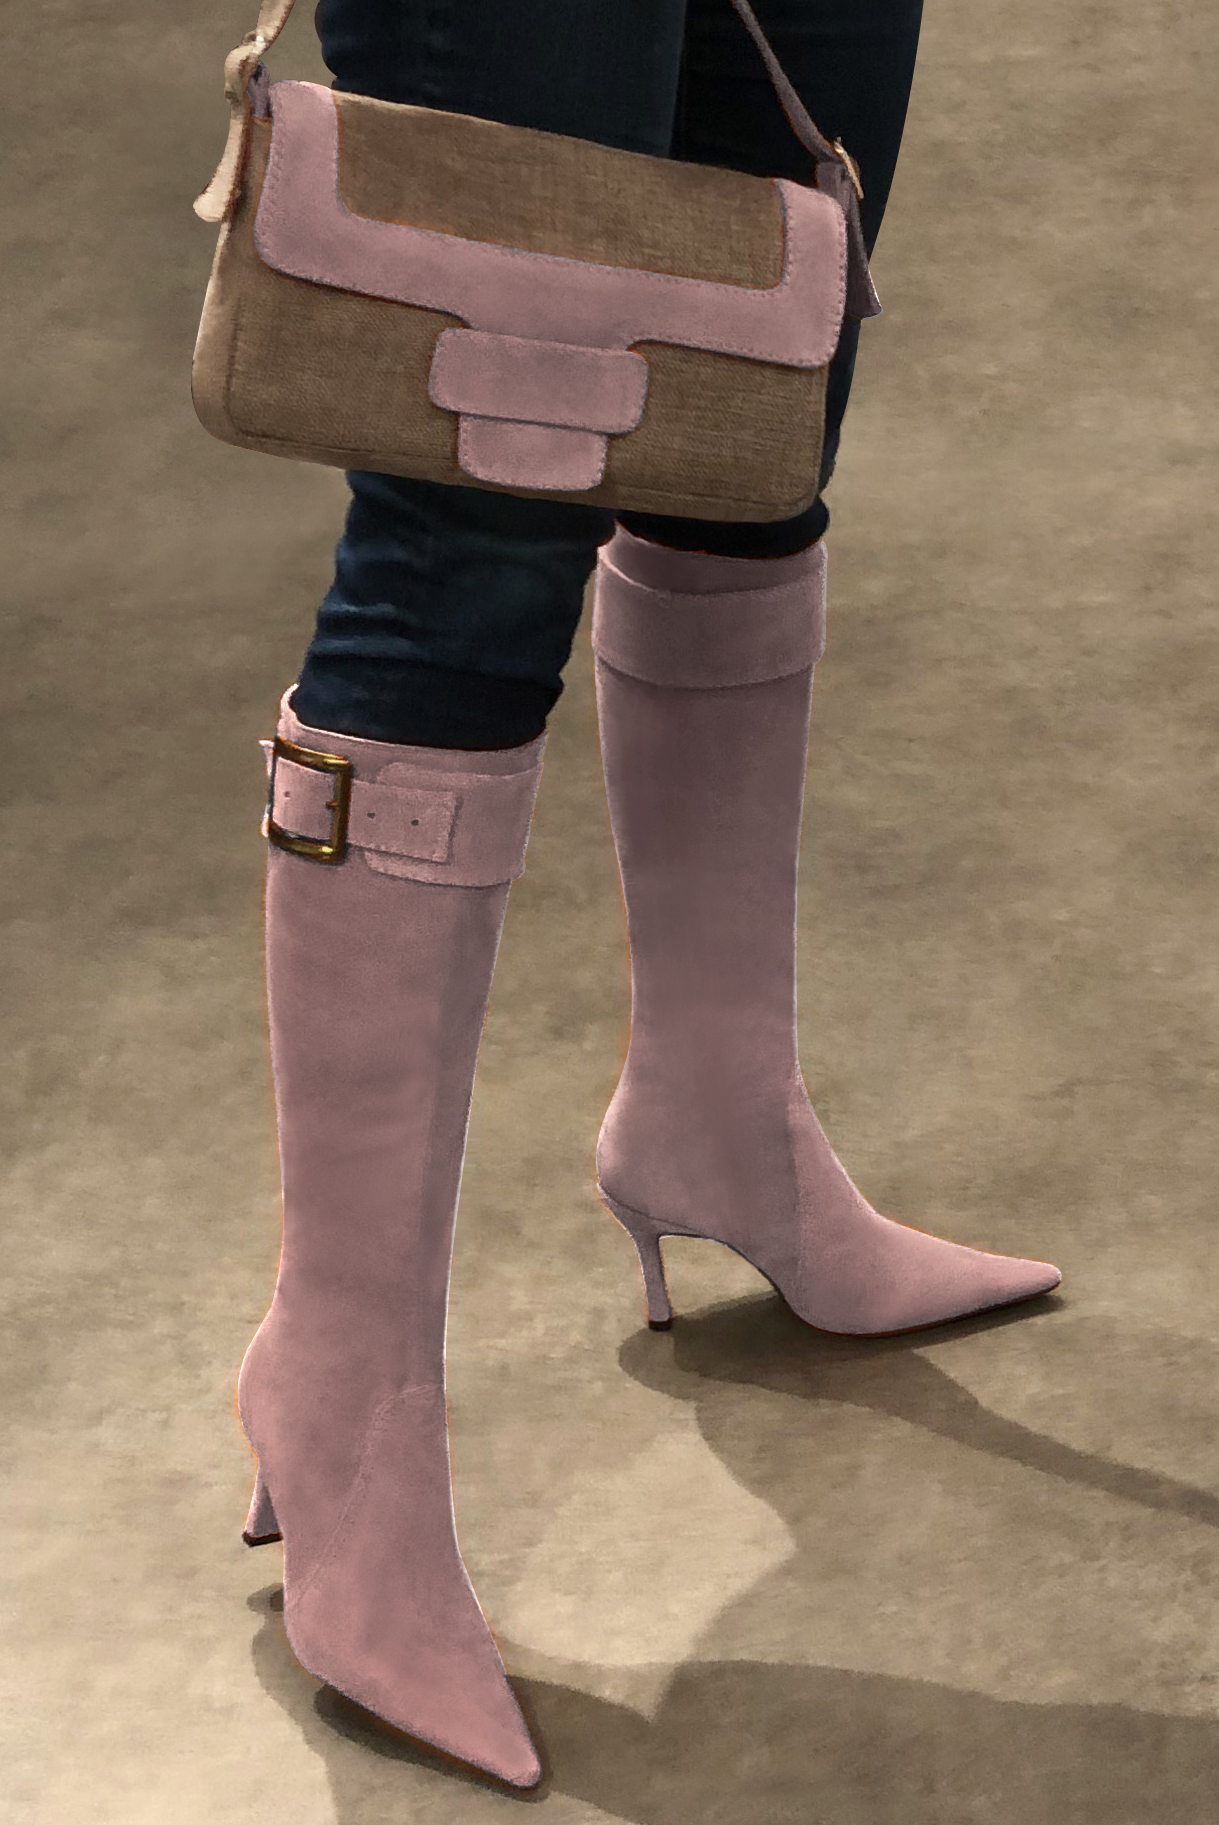 Caramel brown and dusty rose pink women's dress handbag, matching pumps and belts. Worn view - Florence KOOIJMAN